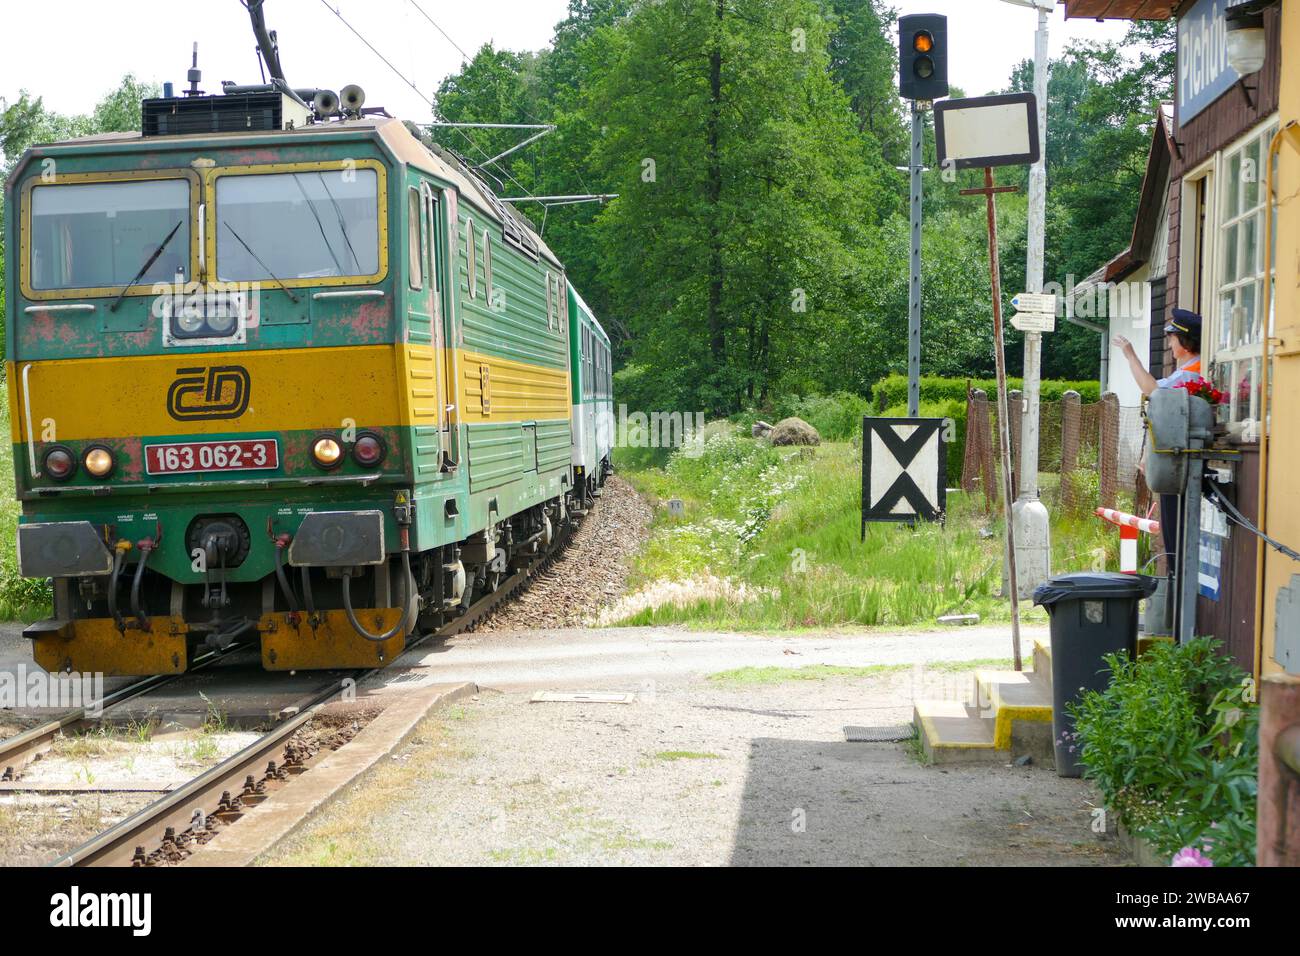 Plchuvky, Cechia - 6 giugno 2017: Ferrovia regionale con treno elettrico Skoda CSD Classe e 499,3 o 163 a colori delle ferrovie ceche Foto Stock